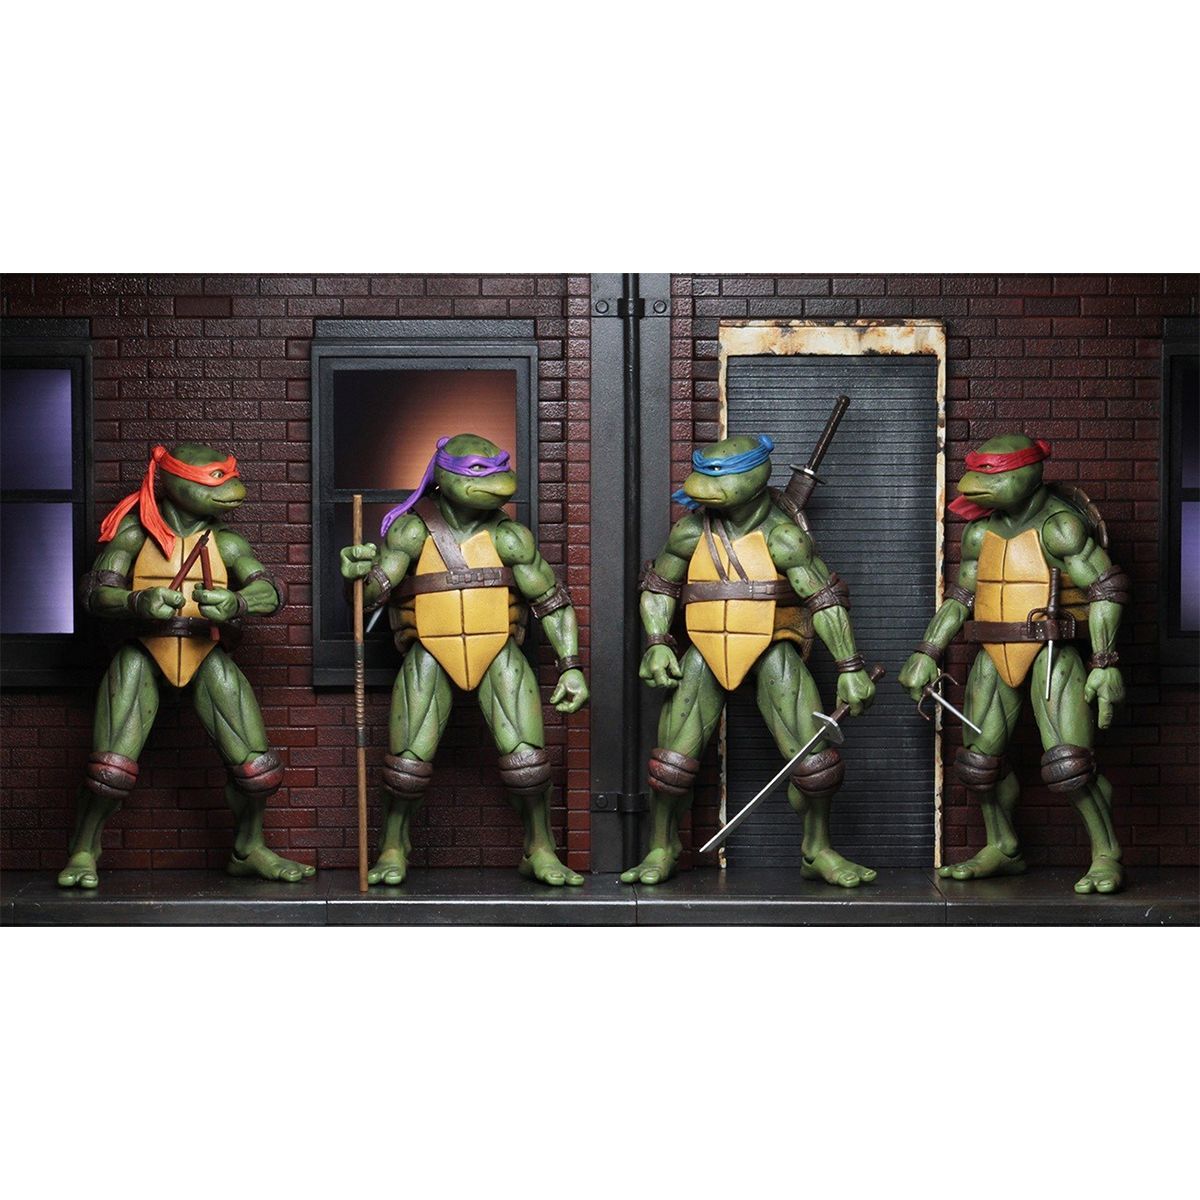 اکشن فیگور نکا مدل لاکپشت های نینجا طرح Turtle Ninja مجموعه 4 عددی -  - 14